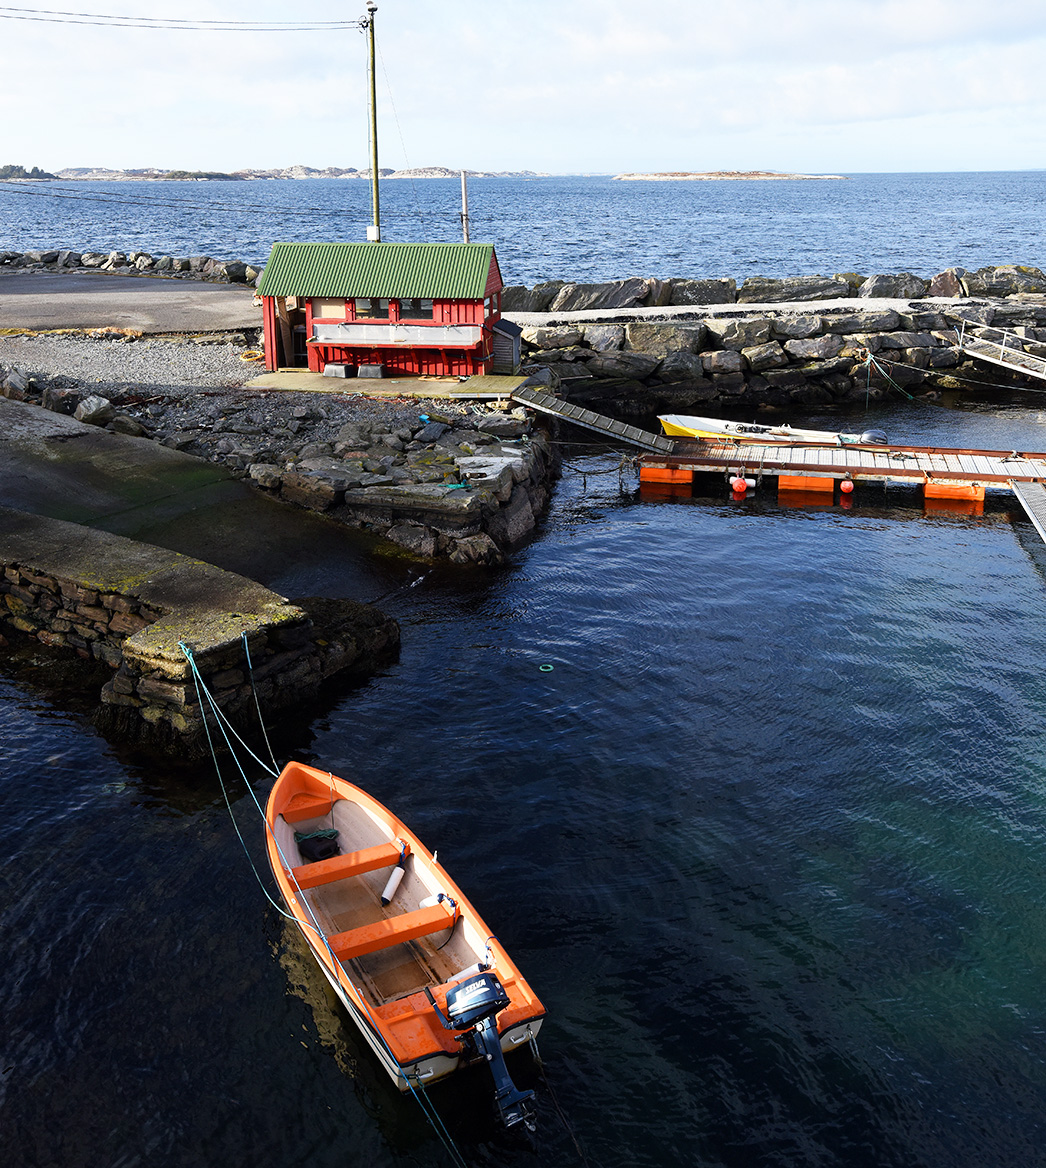 Meeresangeln in Nautnes und Hellesøy - jetzt Angelurlaub nach Norwegen buchen!